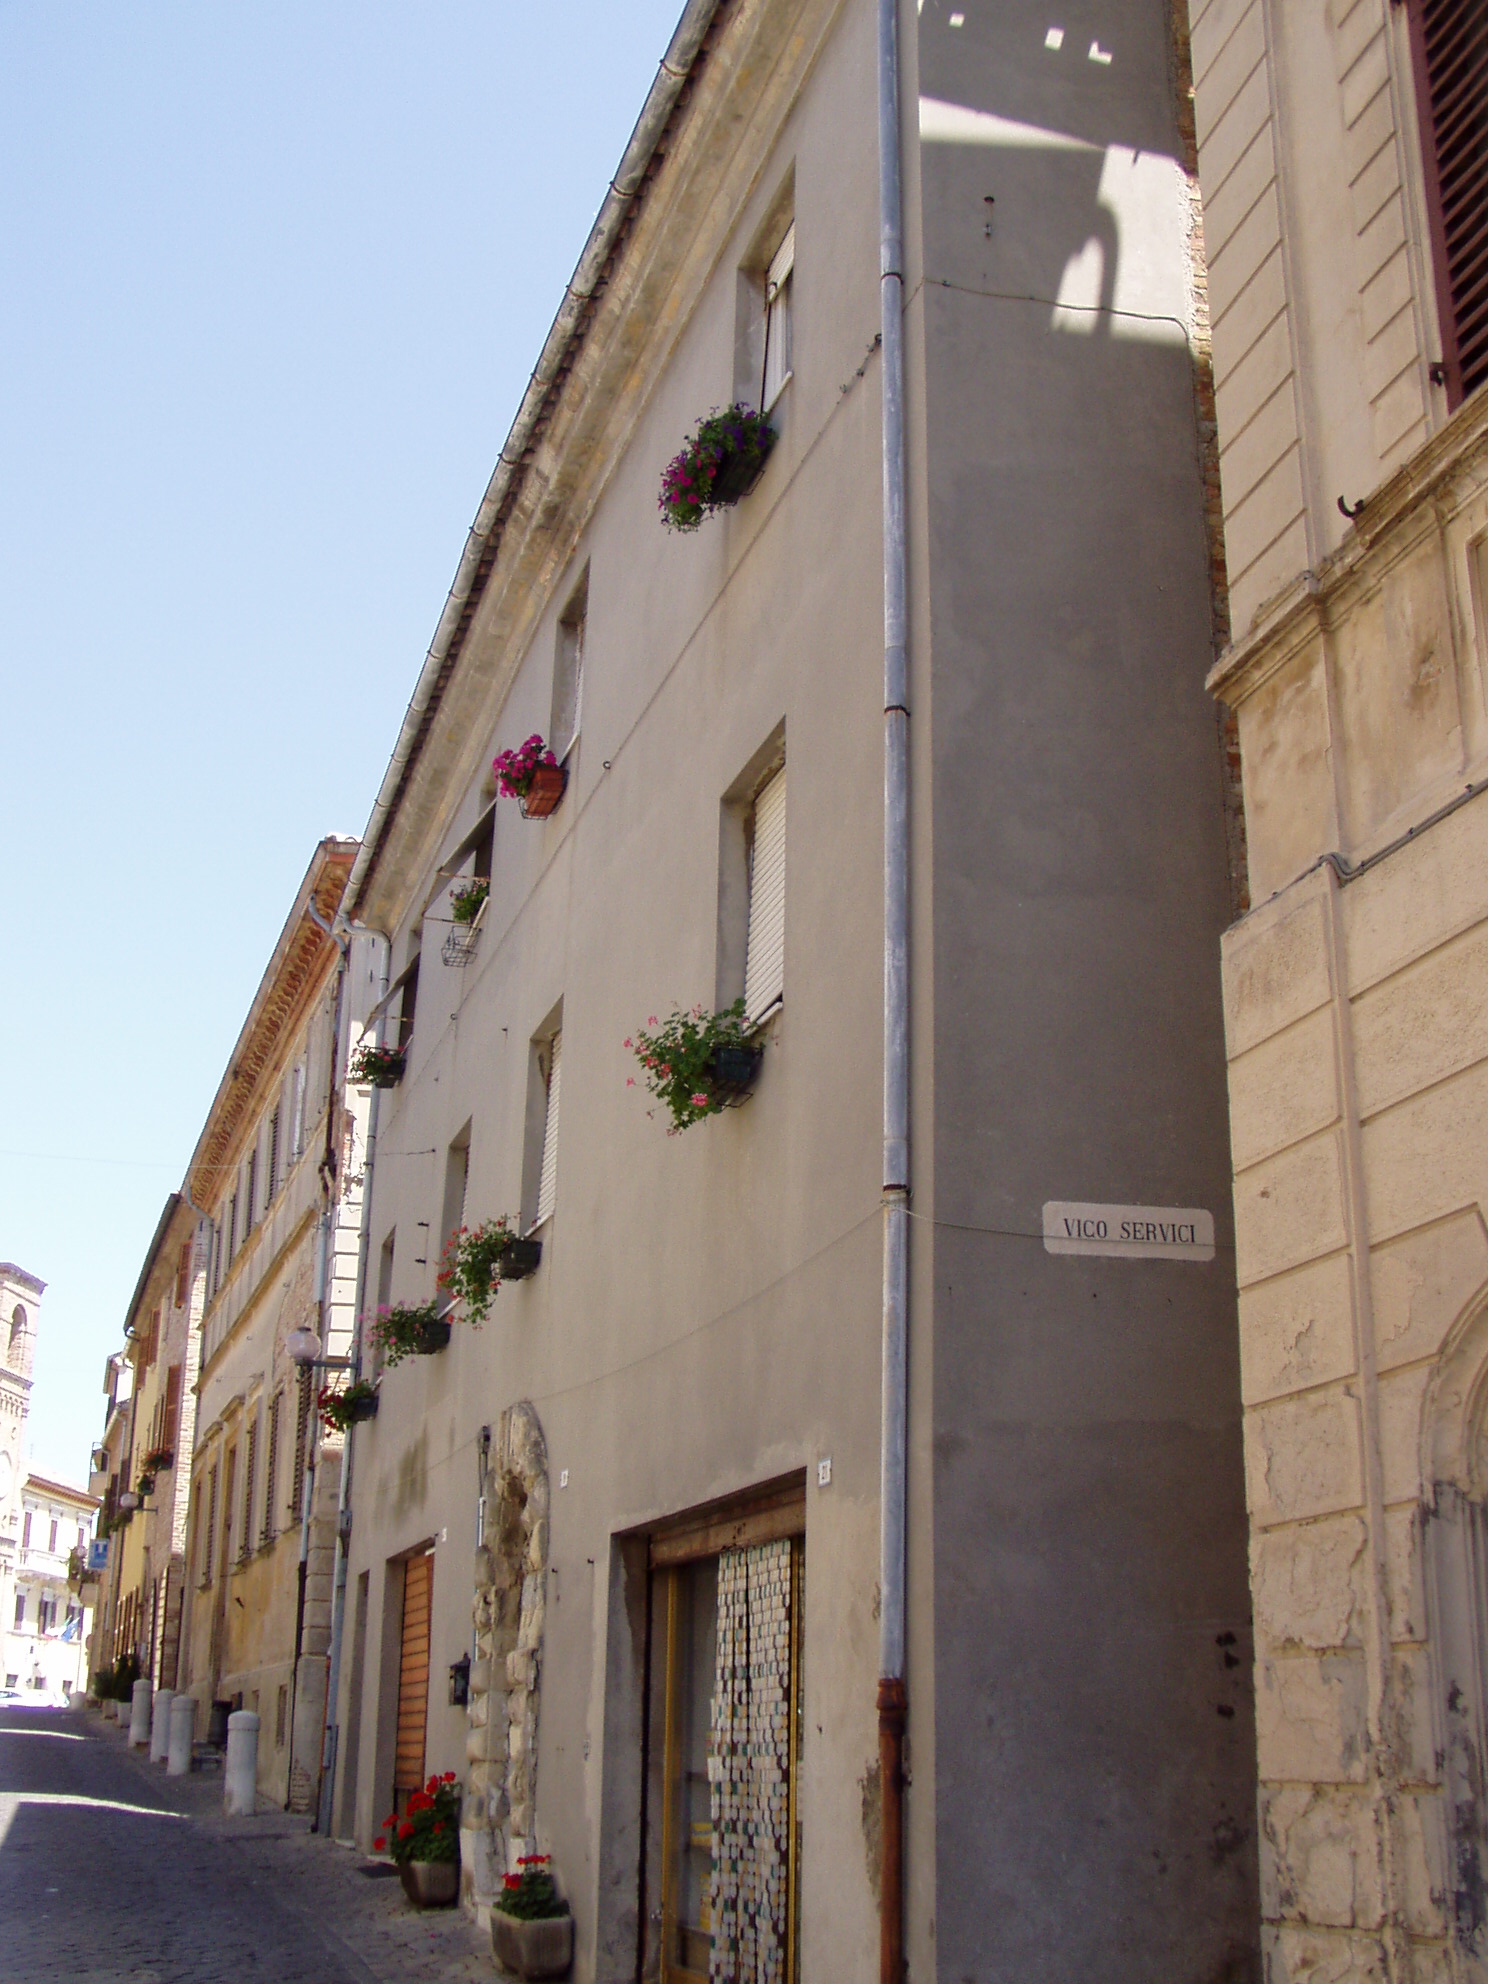 Palazzo Servici (palazzo, nobiliare) - Mombaroccio (PU) 